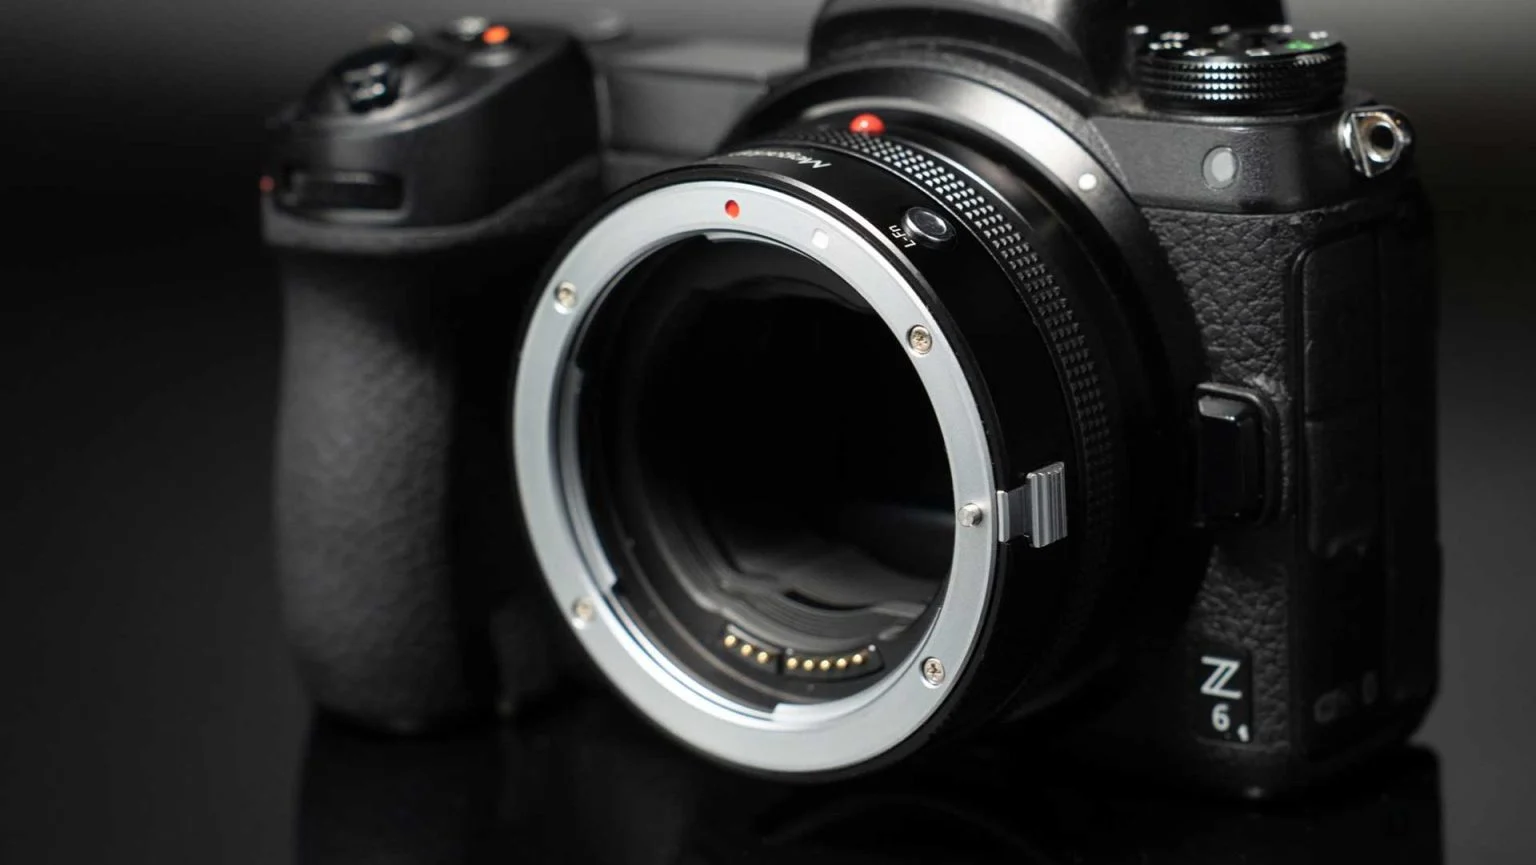 Adaptor Megadap EFTZ21 Dirilis, Bisa Membuat Lensa Canon EF Terpasang di Kamera Nikon Z Anda